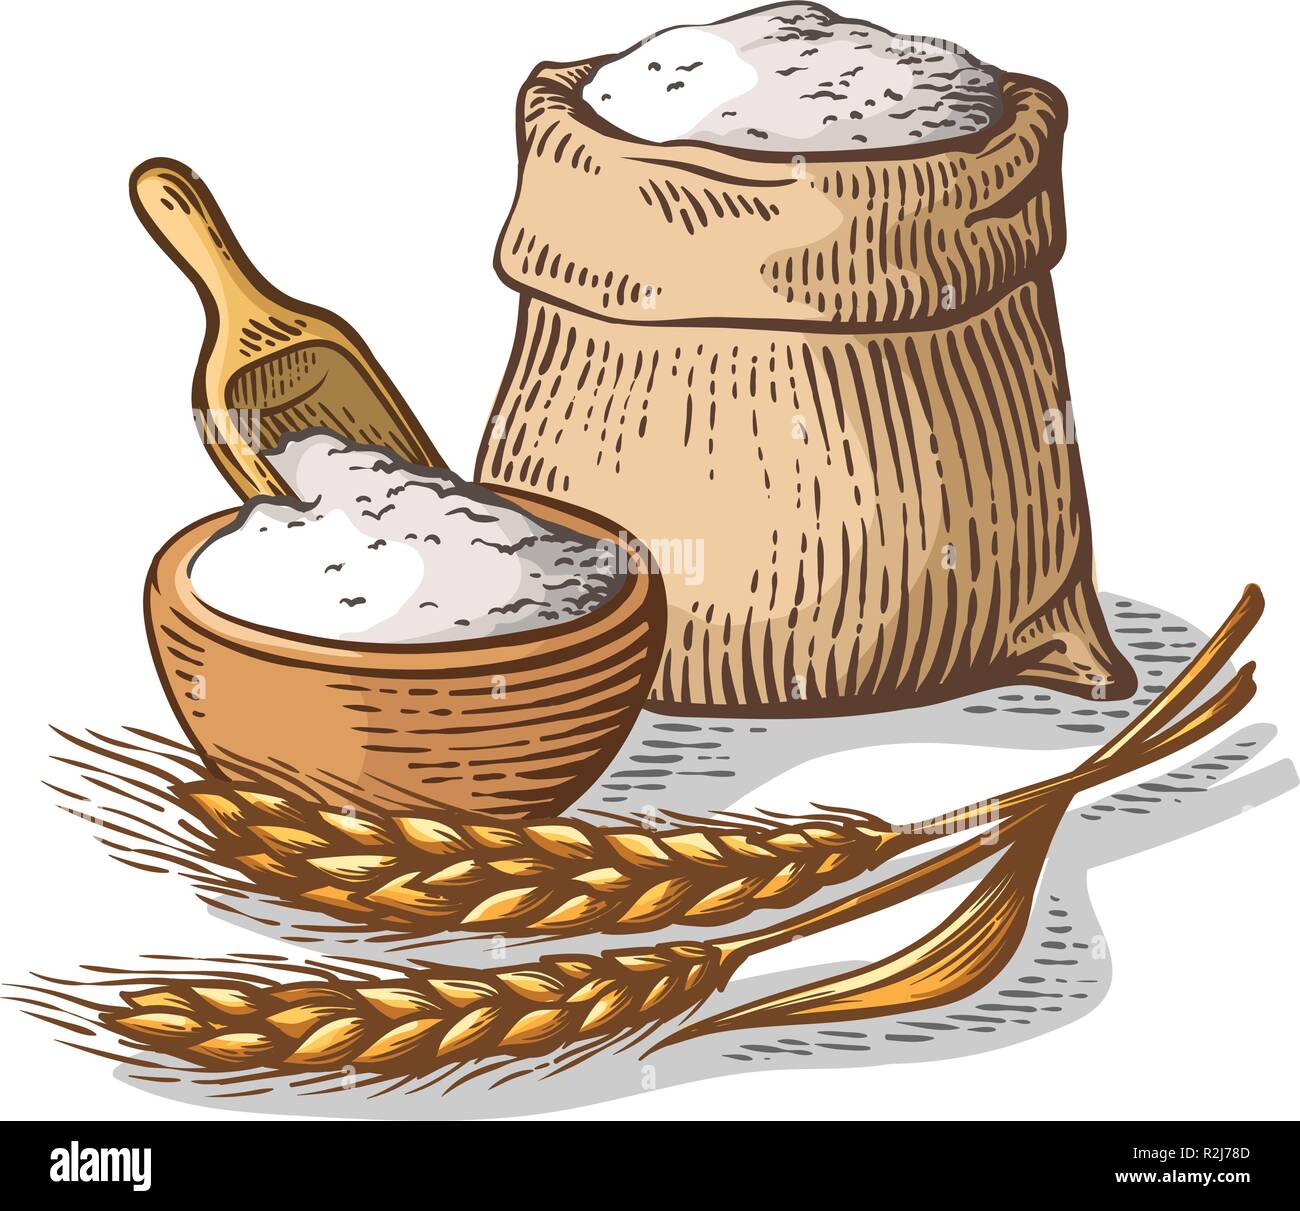 Sac de jute colorées avec de la farine fraîche plat en bois sur fond blanc vector illustration Illustration de Vecteur